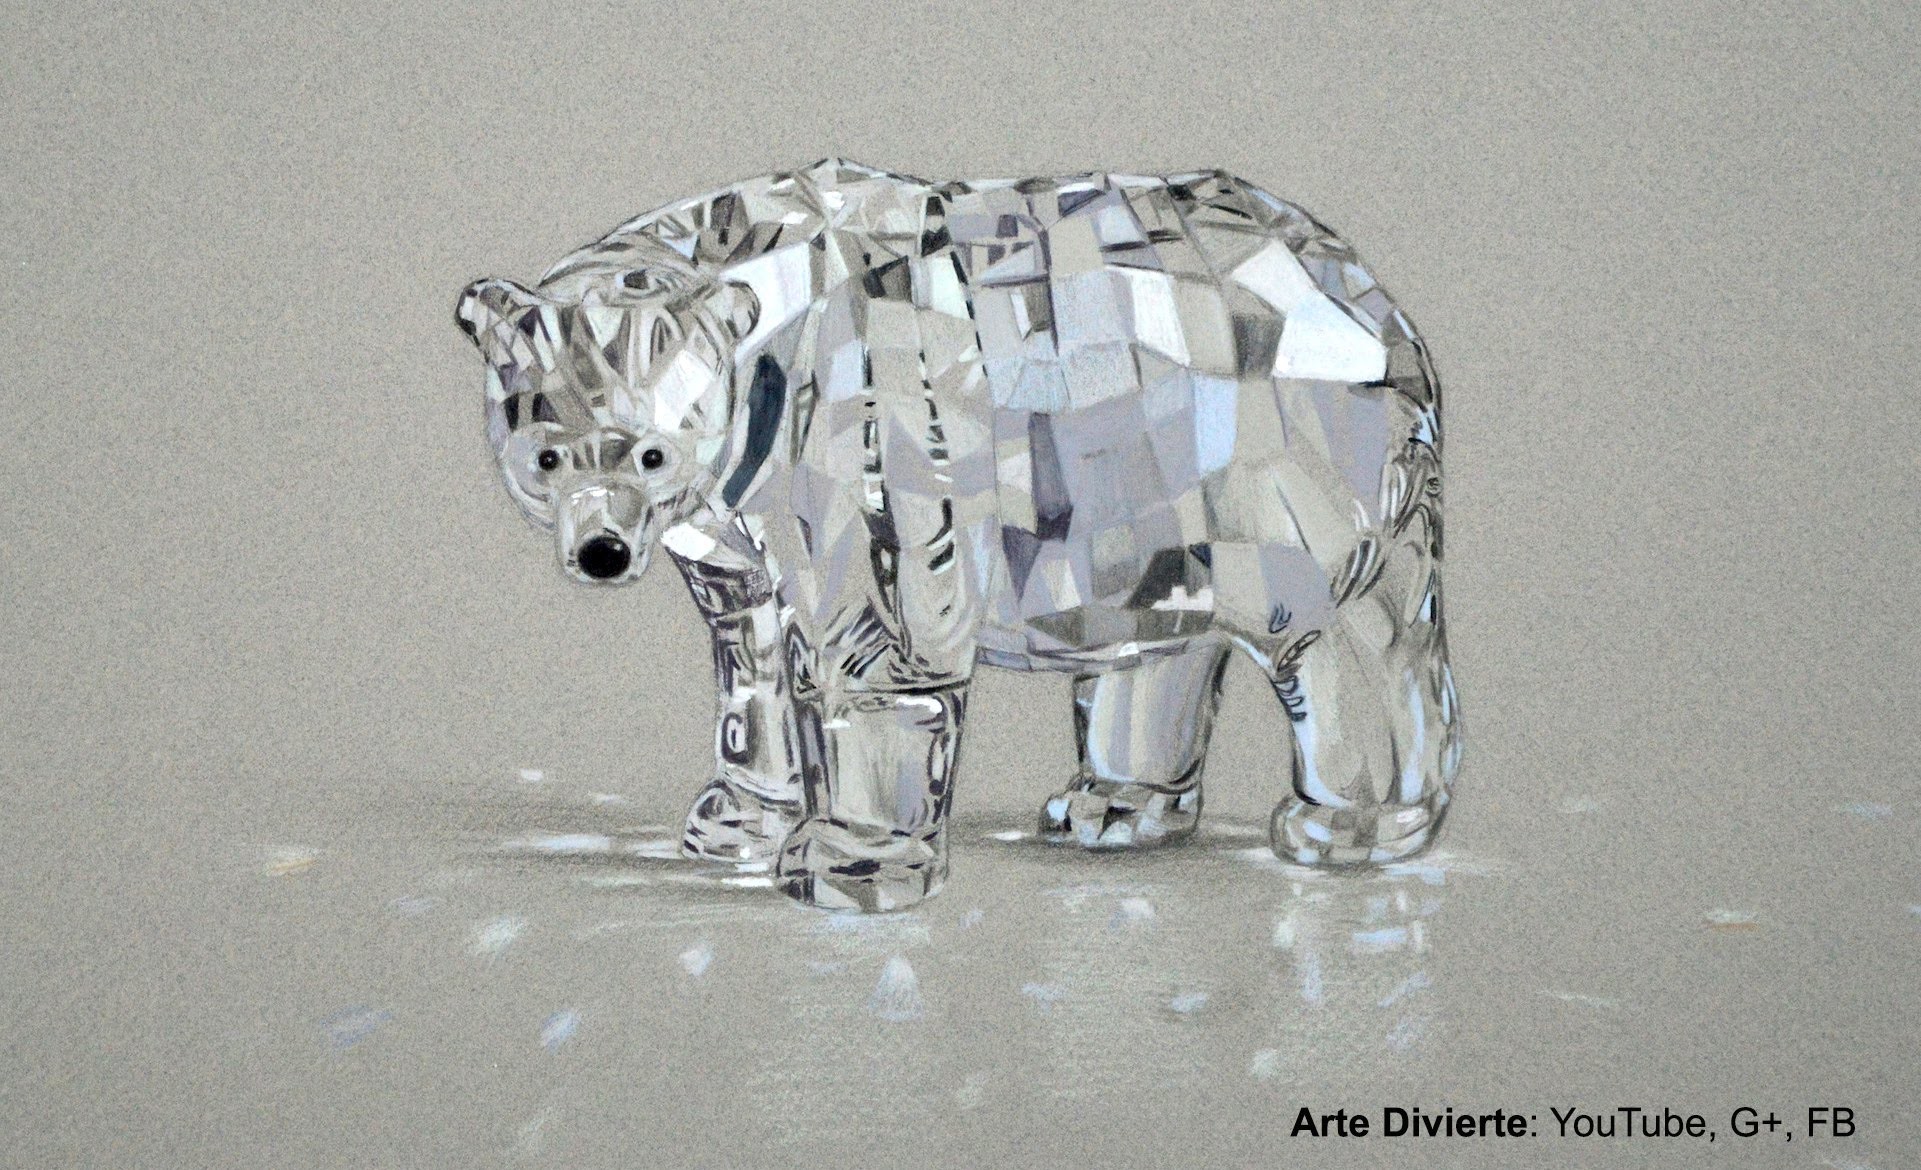 Cómo dibujar un oso de cristal Swarovski con lápices de colores - Arte Divierte